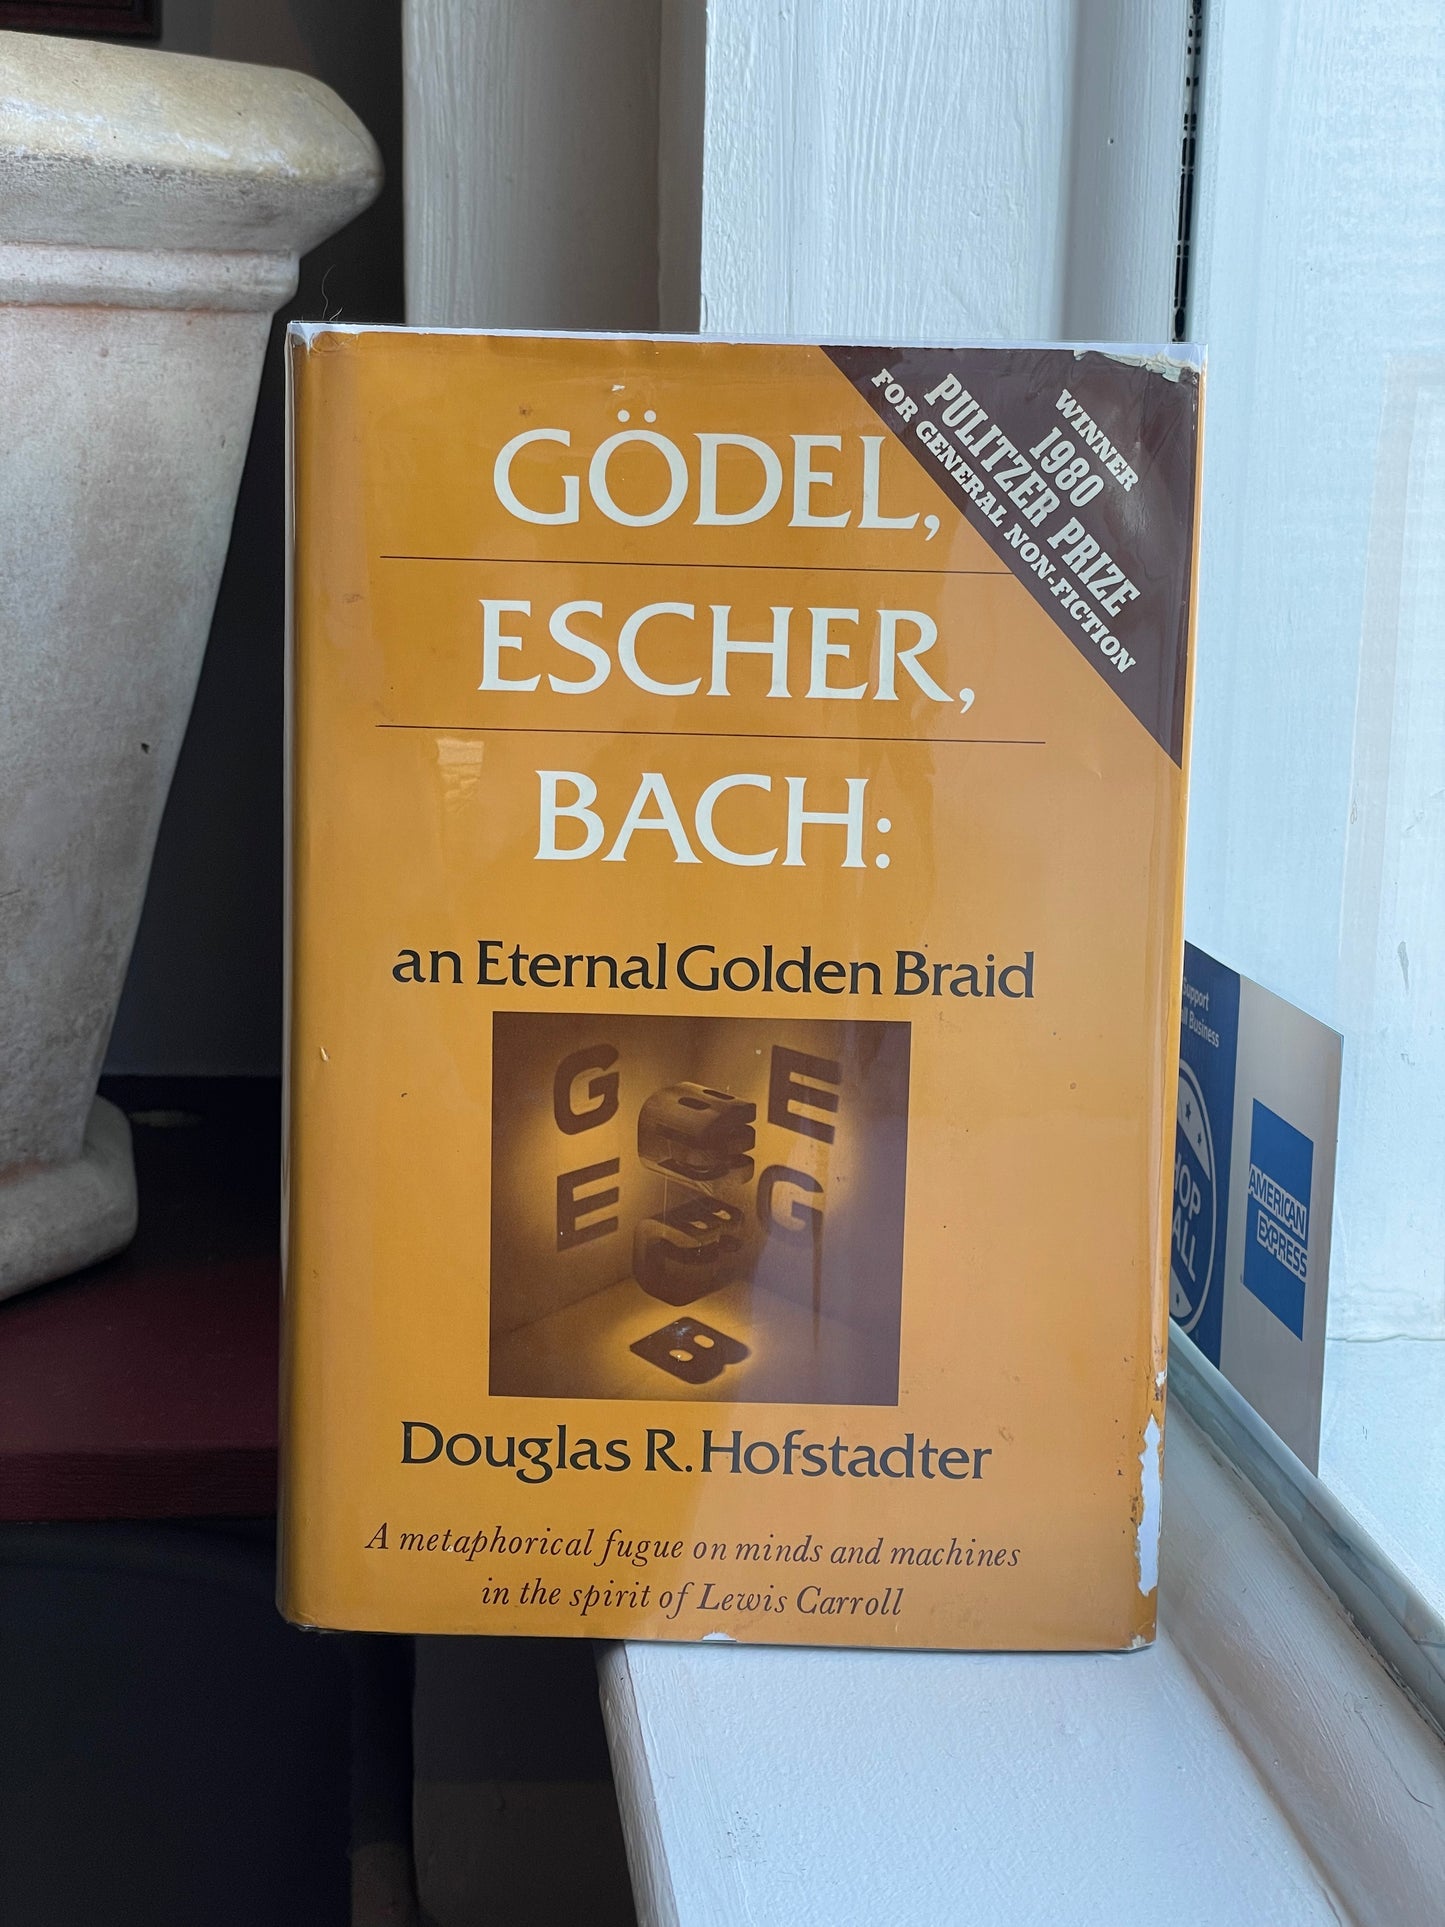 Gödel, Escher, Bach by Douglas R. Hofstadter